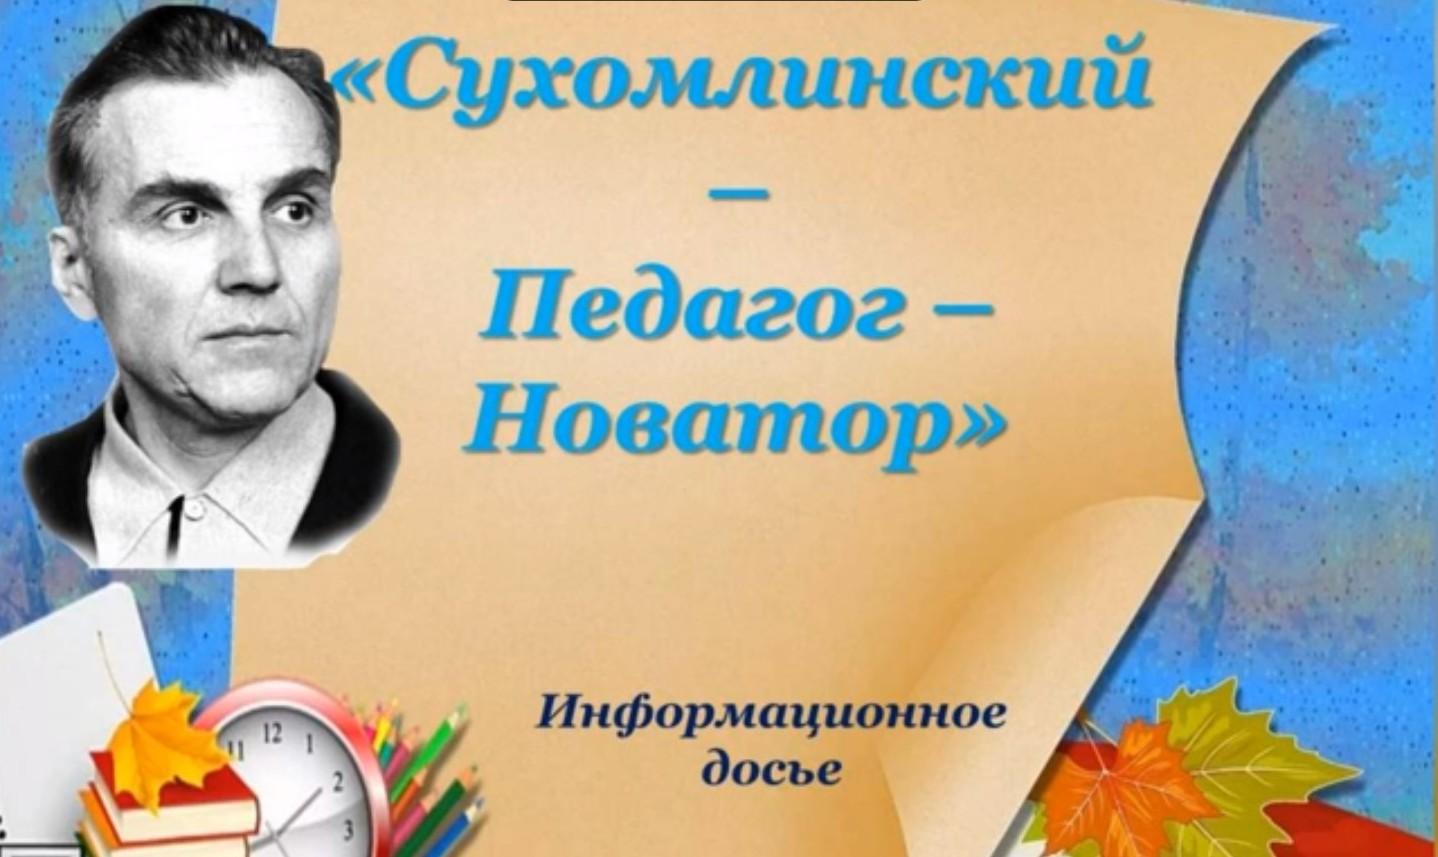 You are currently viewing Информационное досье «Сухомлинский – педагог – новатор»